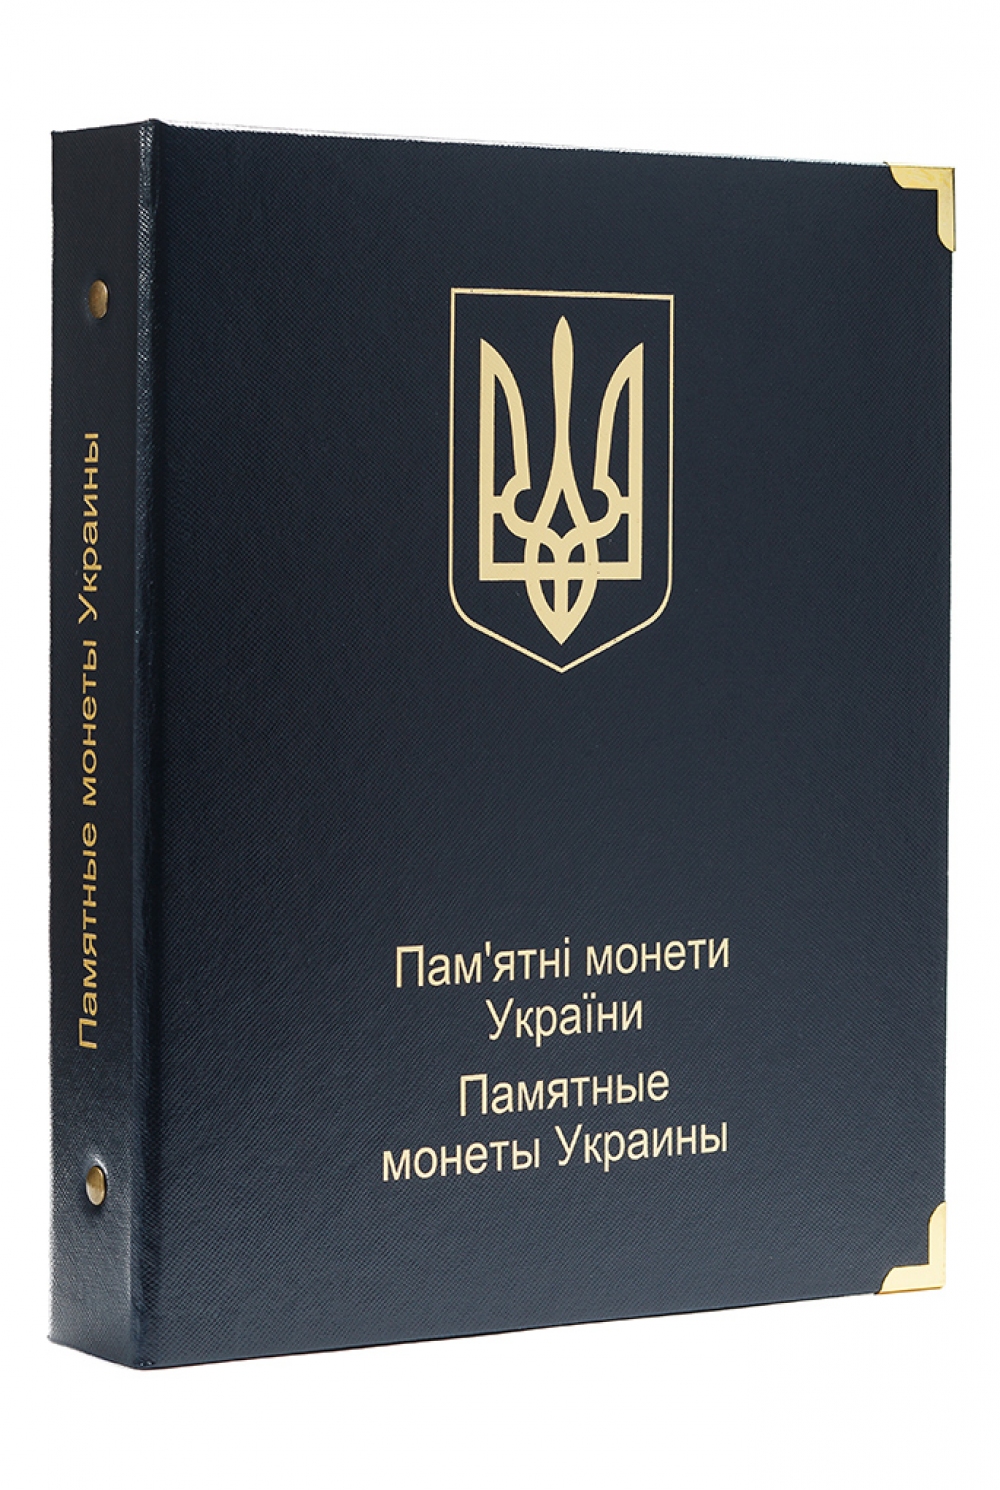 Обложка для альбома с монетами Украины (К05) - 225